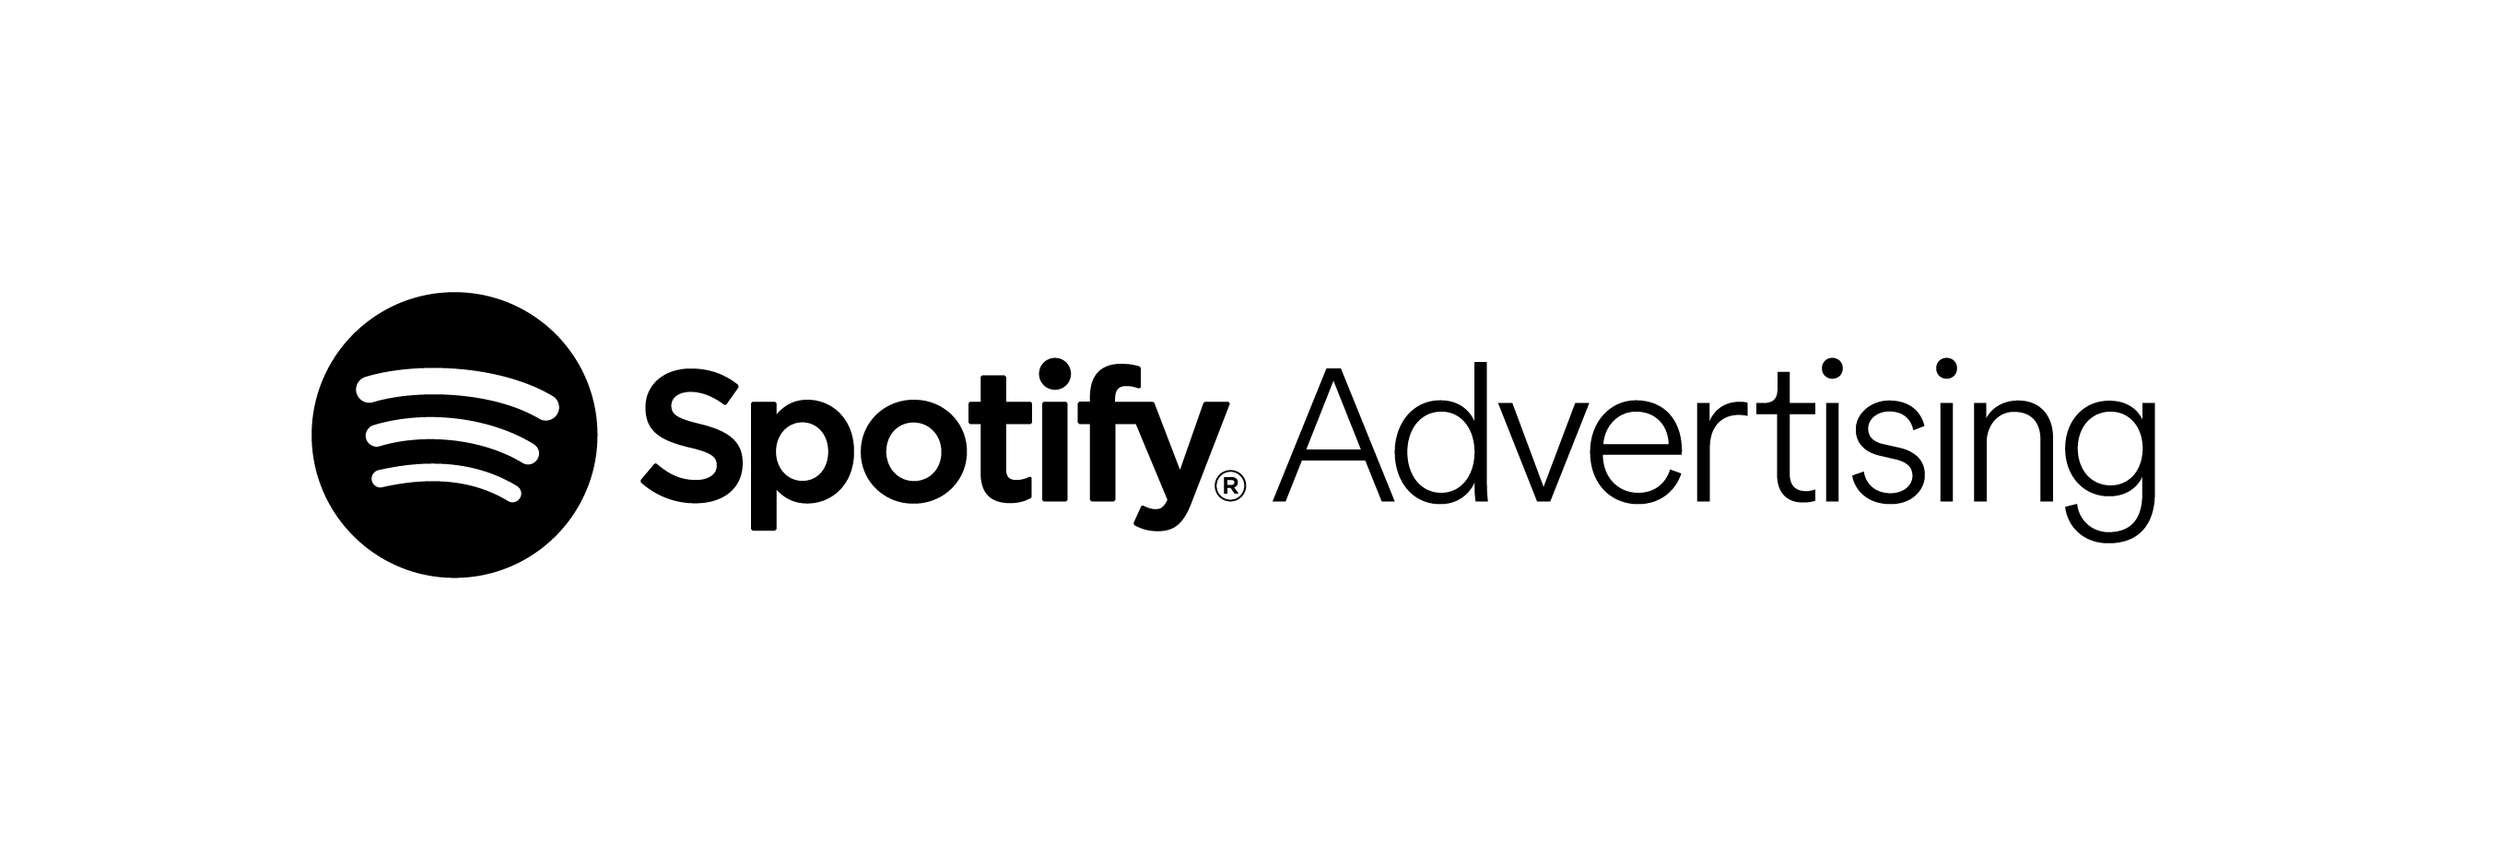 spotify-ads-logo